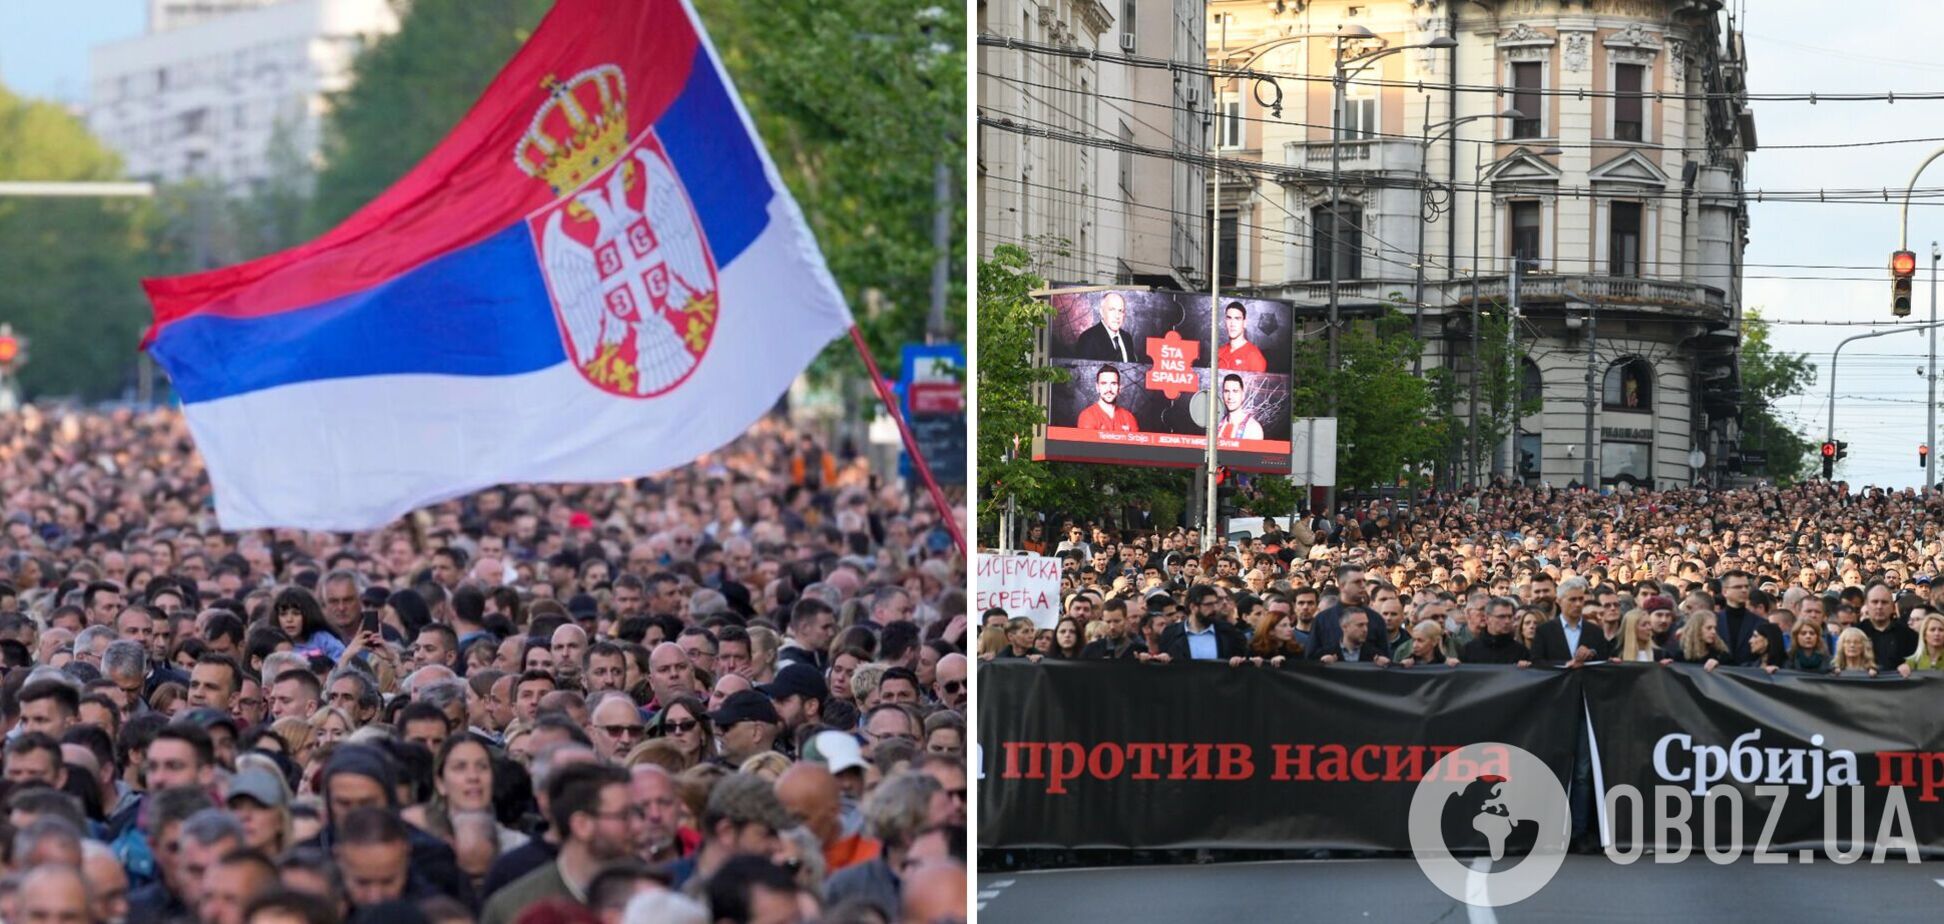 У Сербії масові протести: понад 50 тисяч людей вимагають відставки урядовців. Фото і відео